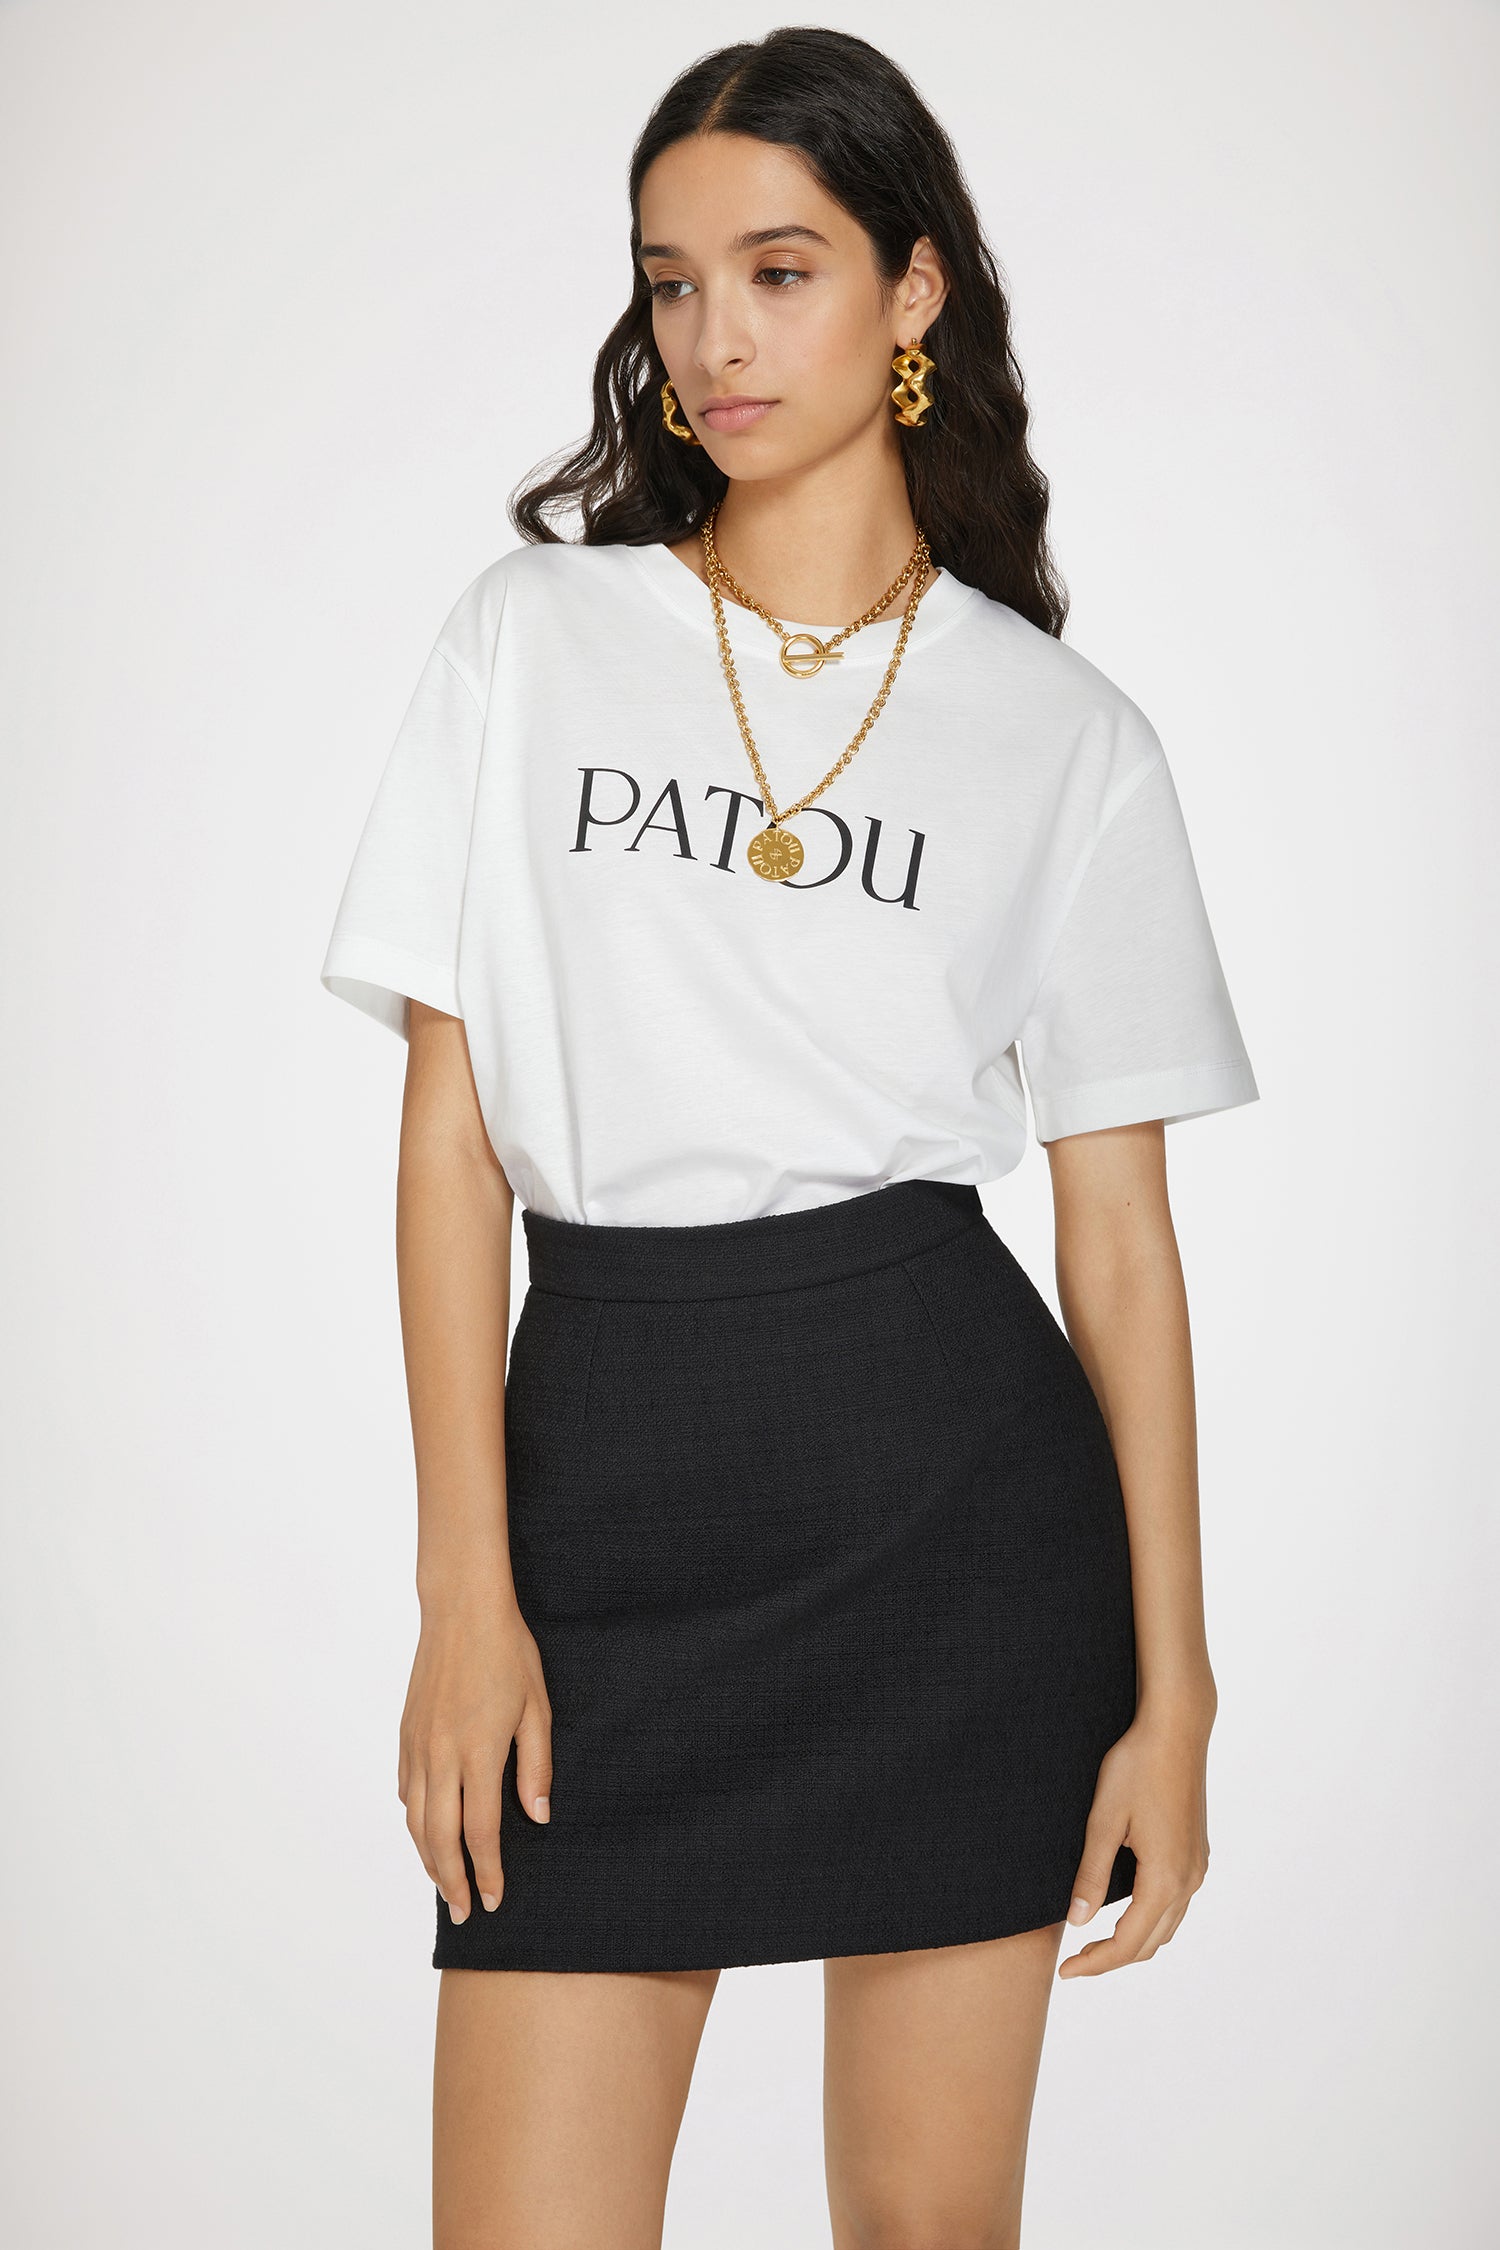 Patou | オーガニックコットン パトゥロゴTシャツ